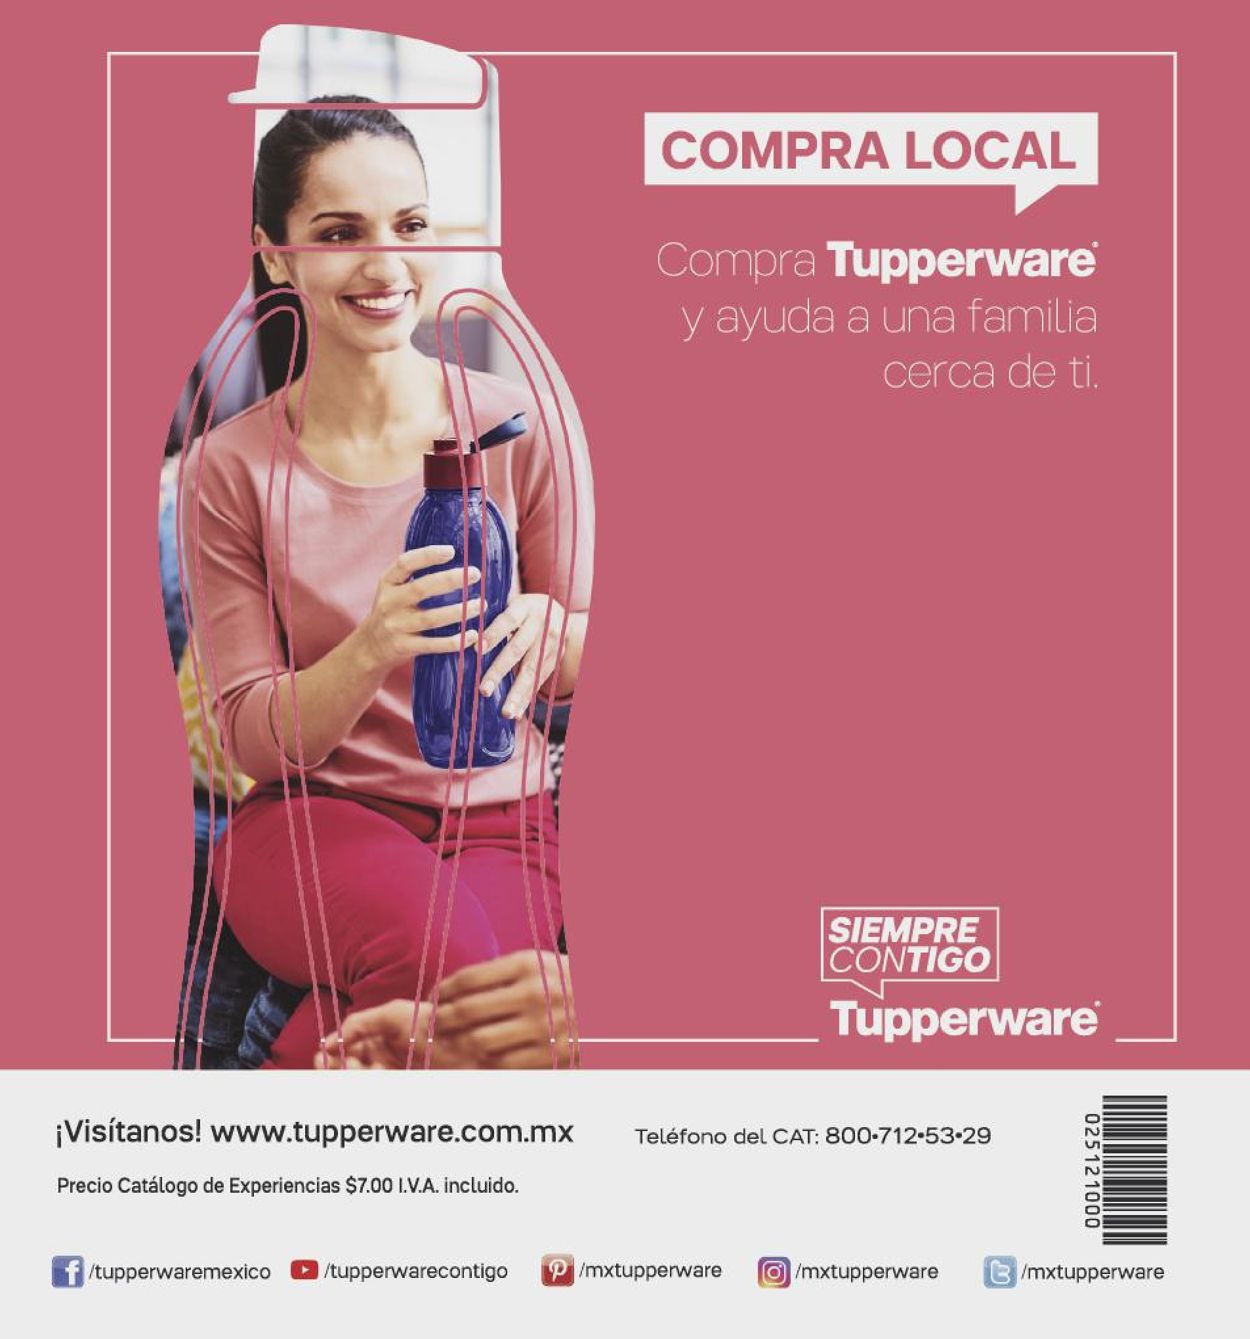 Tupperware Catálogo desde 19.10.2020